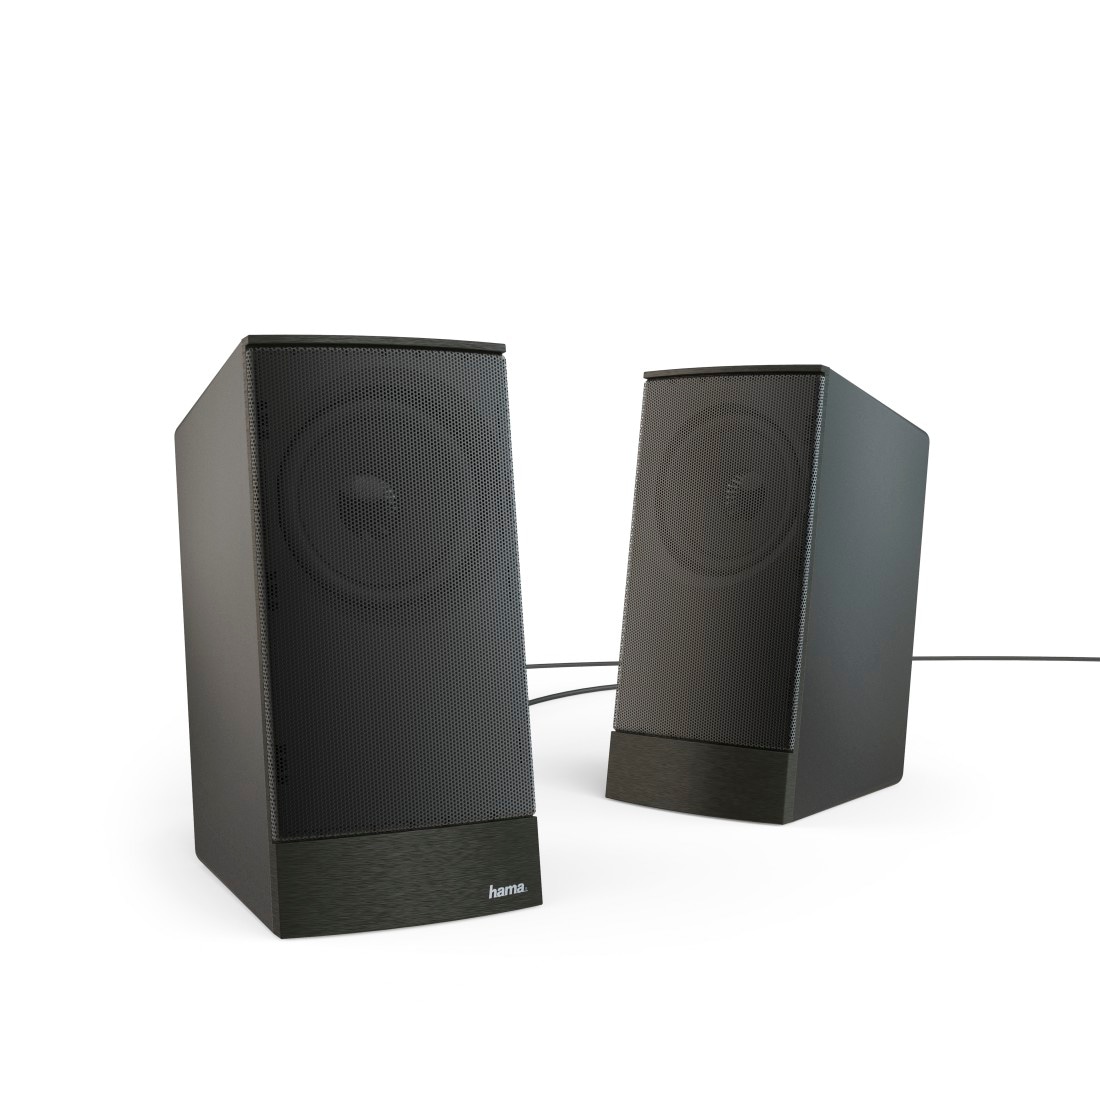 Hama PC-Lautsprecher »PC Lautsprecher Boxen Set für PC oder Notebook, Farbe Schwarz«, Lautsprecherregelung, 3,5 mm Klinkenstecker, externes Netzteil